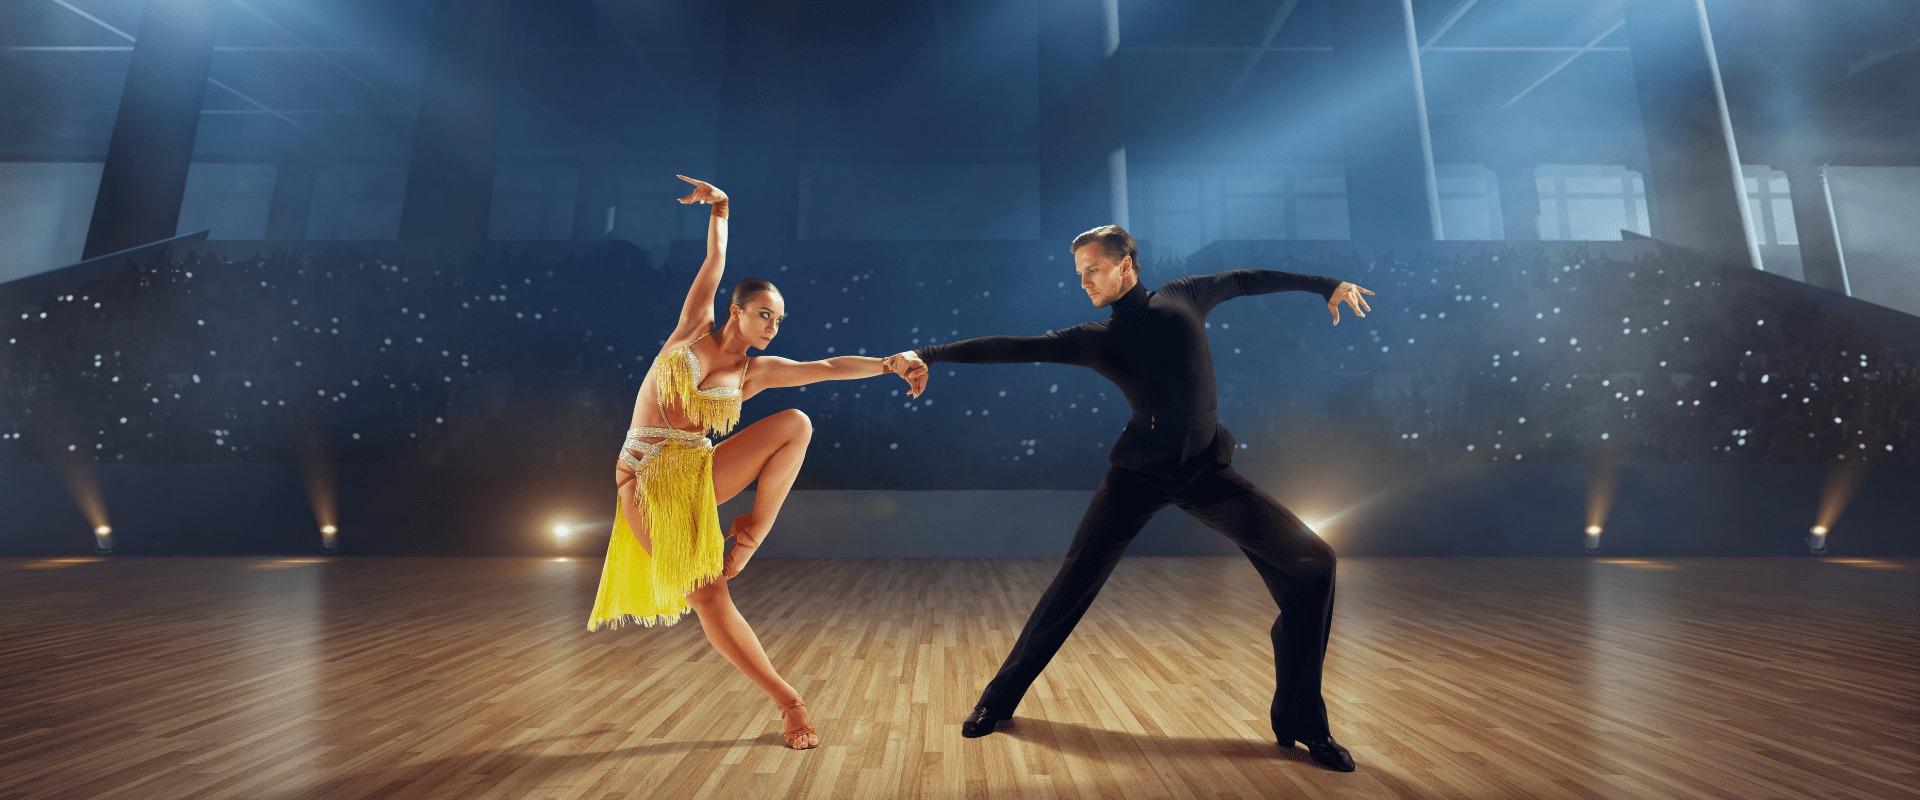 Giảm nguy cơ mất trí nhớ cùng nhiều lợi ích khác của nhảy 2